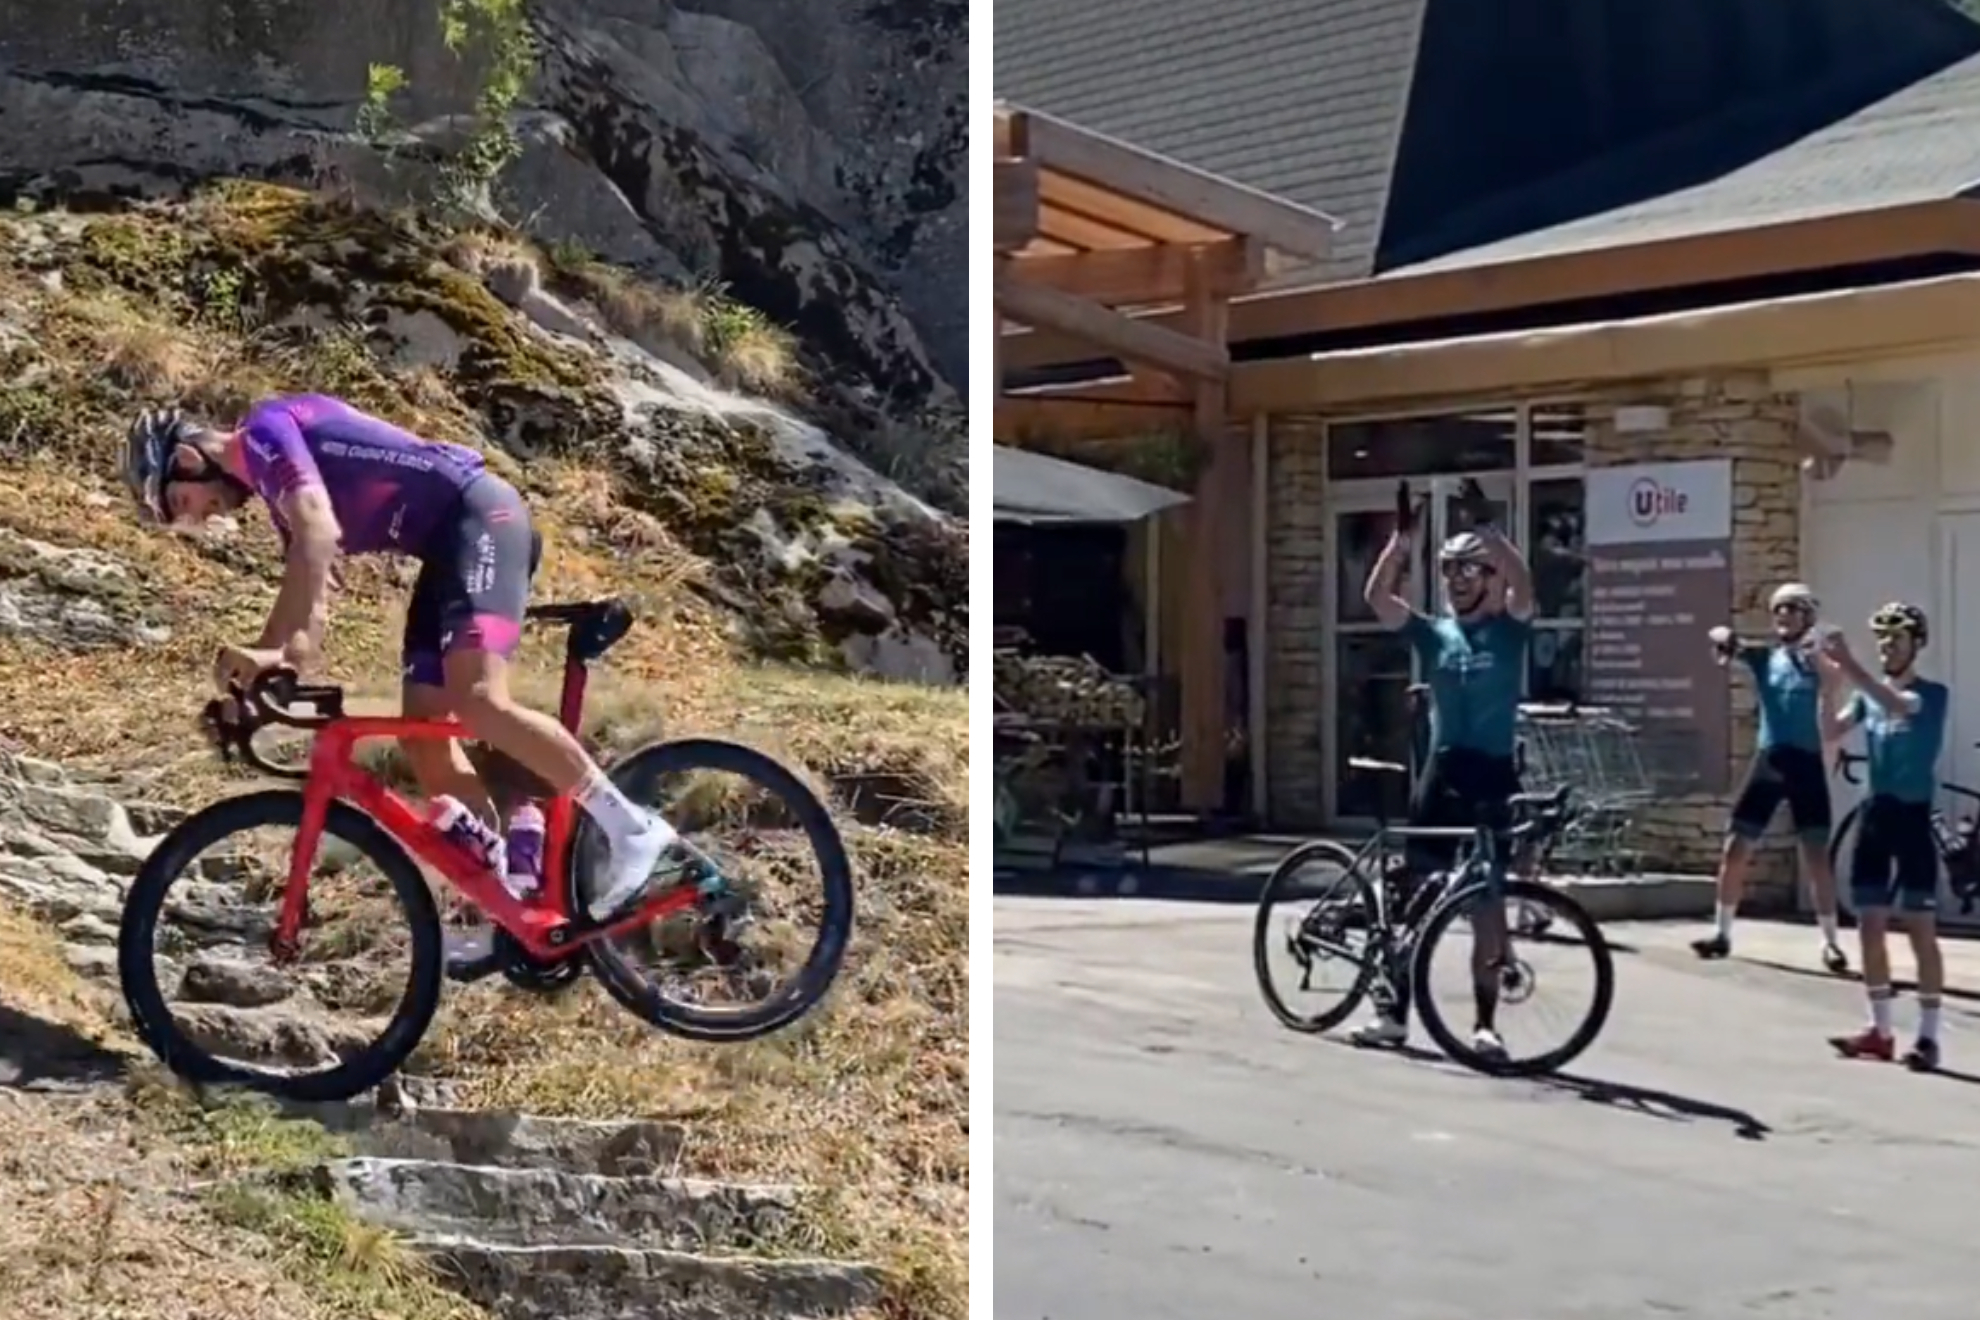 El reto viral 'imposible' de Felipe Orts: Conseguir subir las escaleras en la bici?